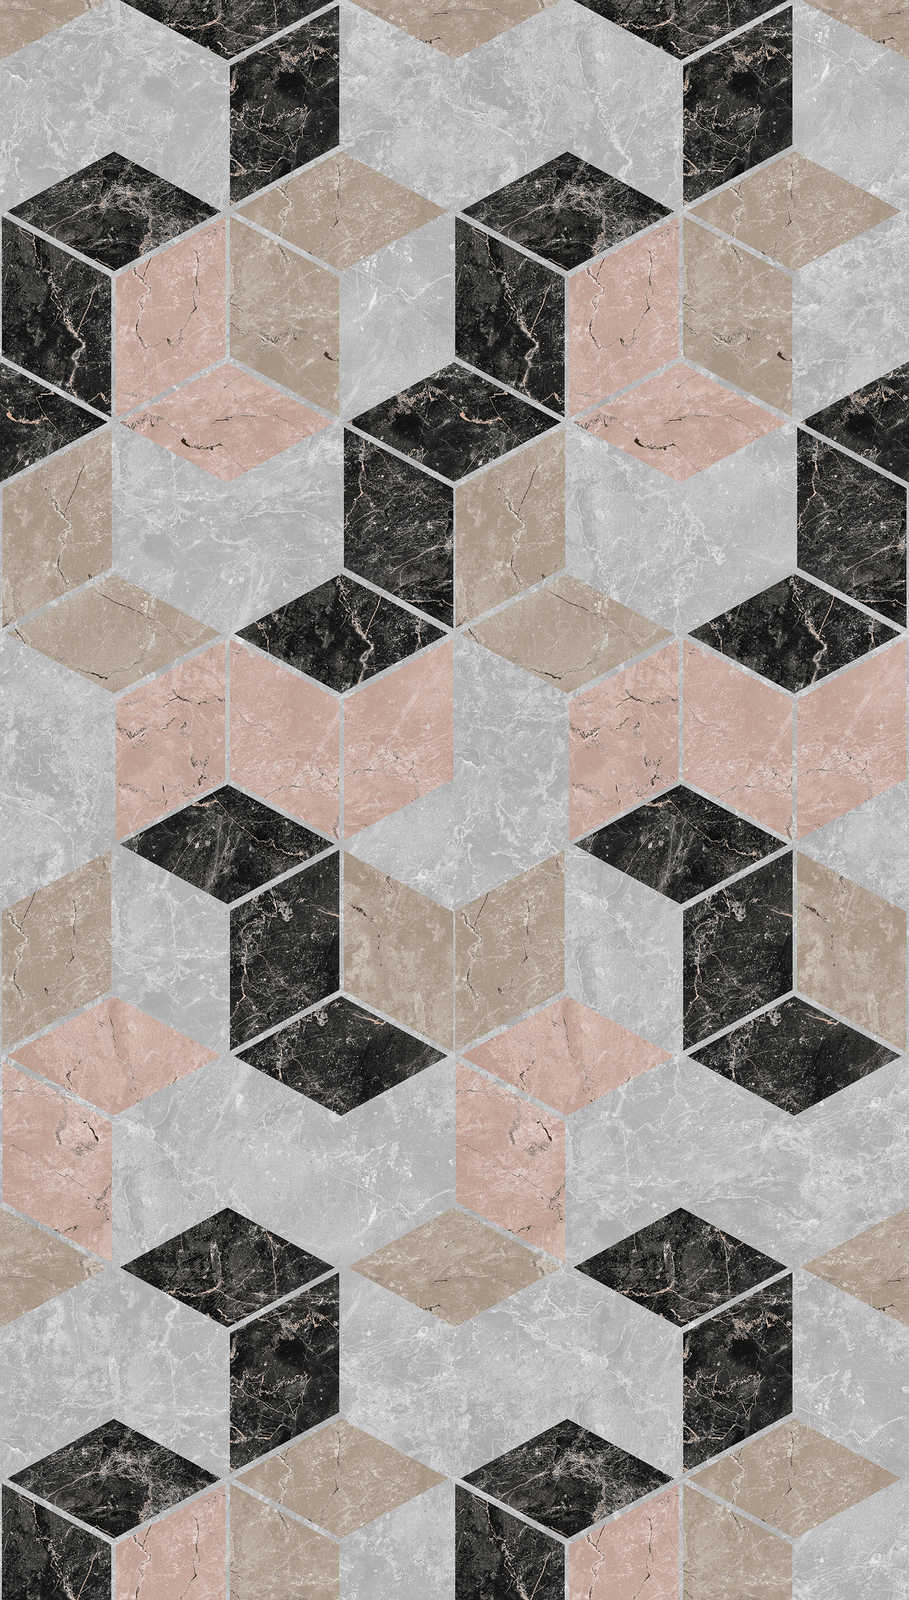             Geometrisch designbehang in ruitvorm - grijs, beige, zwart
        